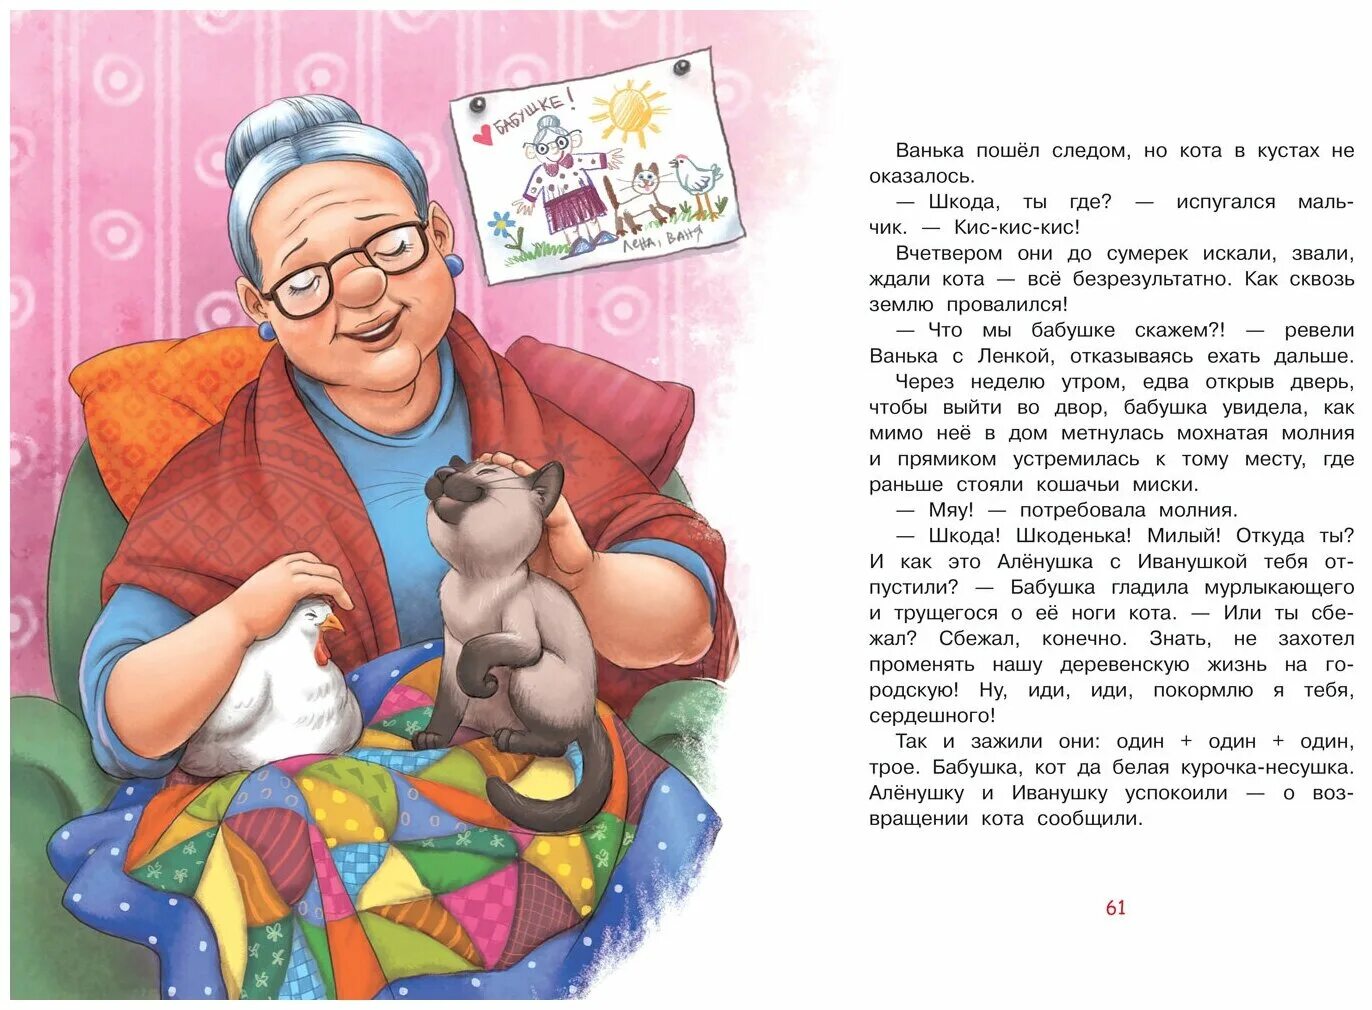 Бабушка можно у тебя пожить 131. Рассказ про бабушку. Hfpprfp j ,f,EIRT. Истории бабушки. Небольшой рассказ о бабушке.